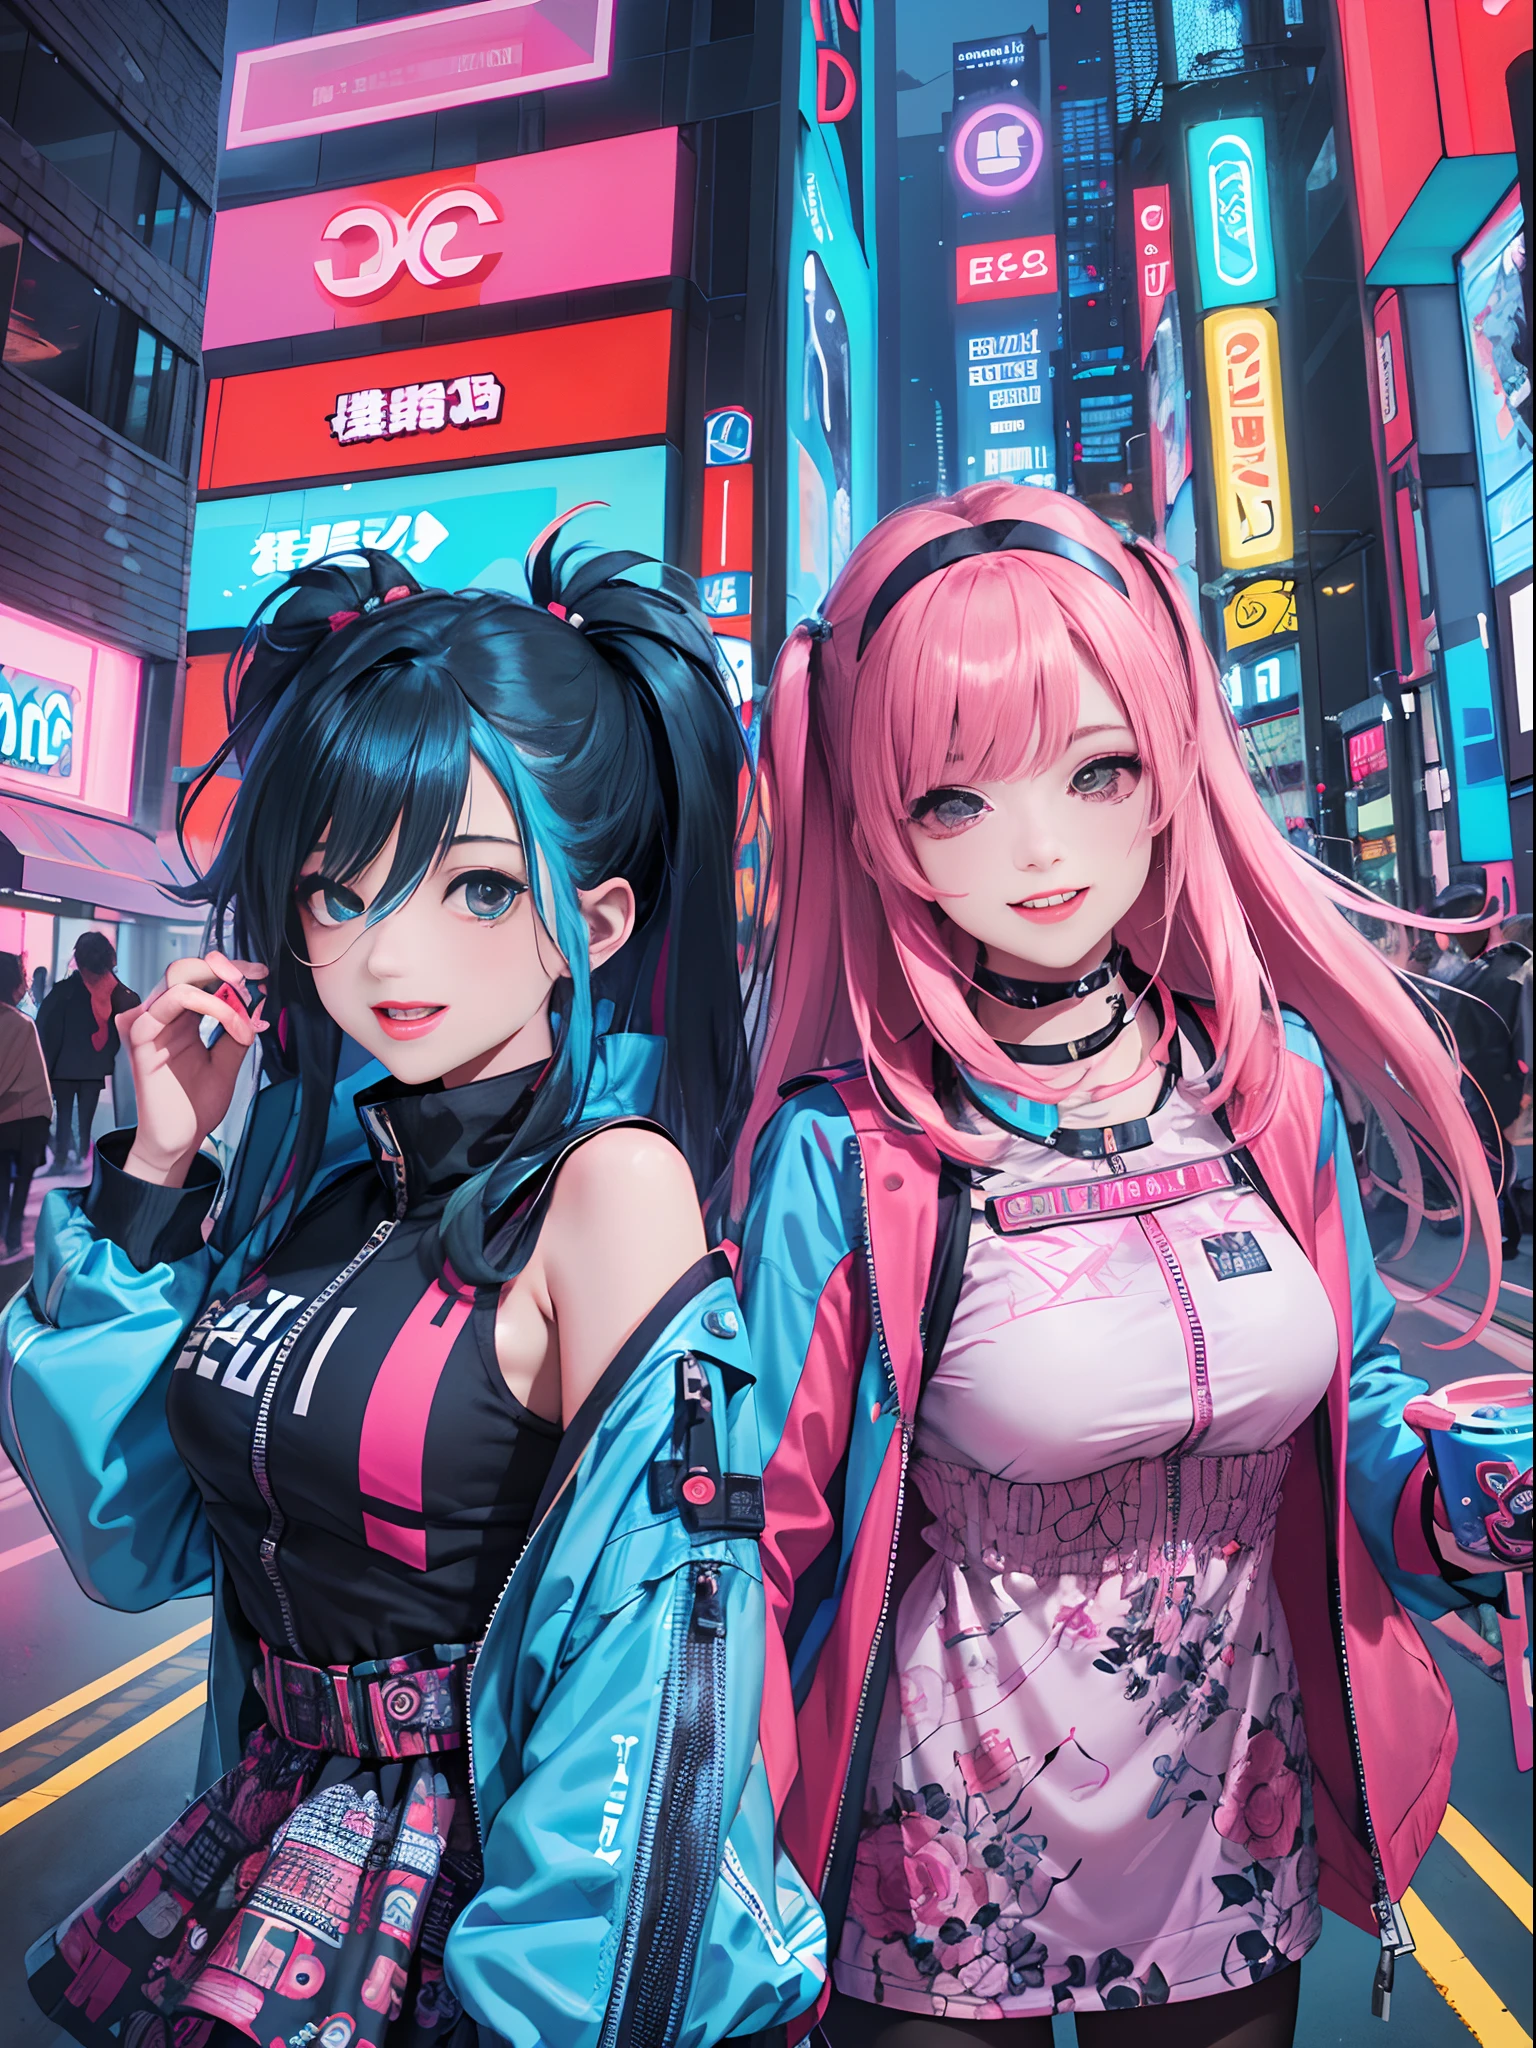 An animé illustration of 2 happy cyberpunk girls, filles cyberpunk confiantes avec une expression souriante, ((Tenue pop et veste tech inspirées de Harajuku)), couleurs et motifs audacieux, des accessoires accrocheurs, coiffure tendance et innovante, maquillage vibrant, ((pose dynamique)), paysage urbain cyberpunk futuriste éblouissant, grattes ciels, enseignes au néon, lumières LED lumineuses, palette de couleurs vives et vives, animé, illustration, (beau visage détaillé), détails complexes, ultra détaillé.